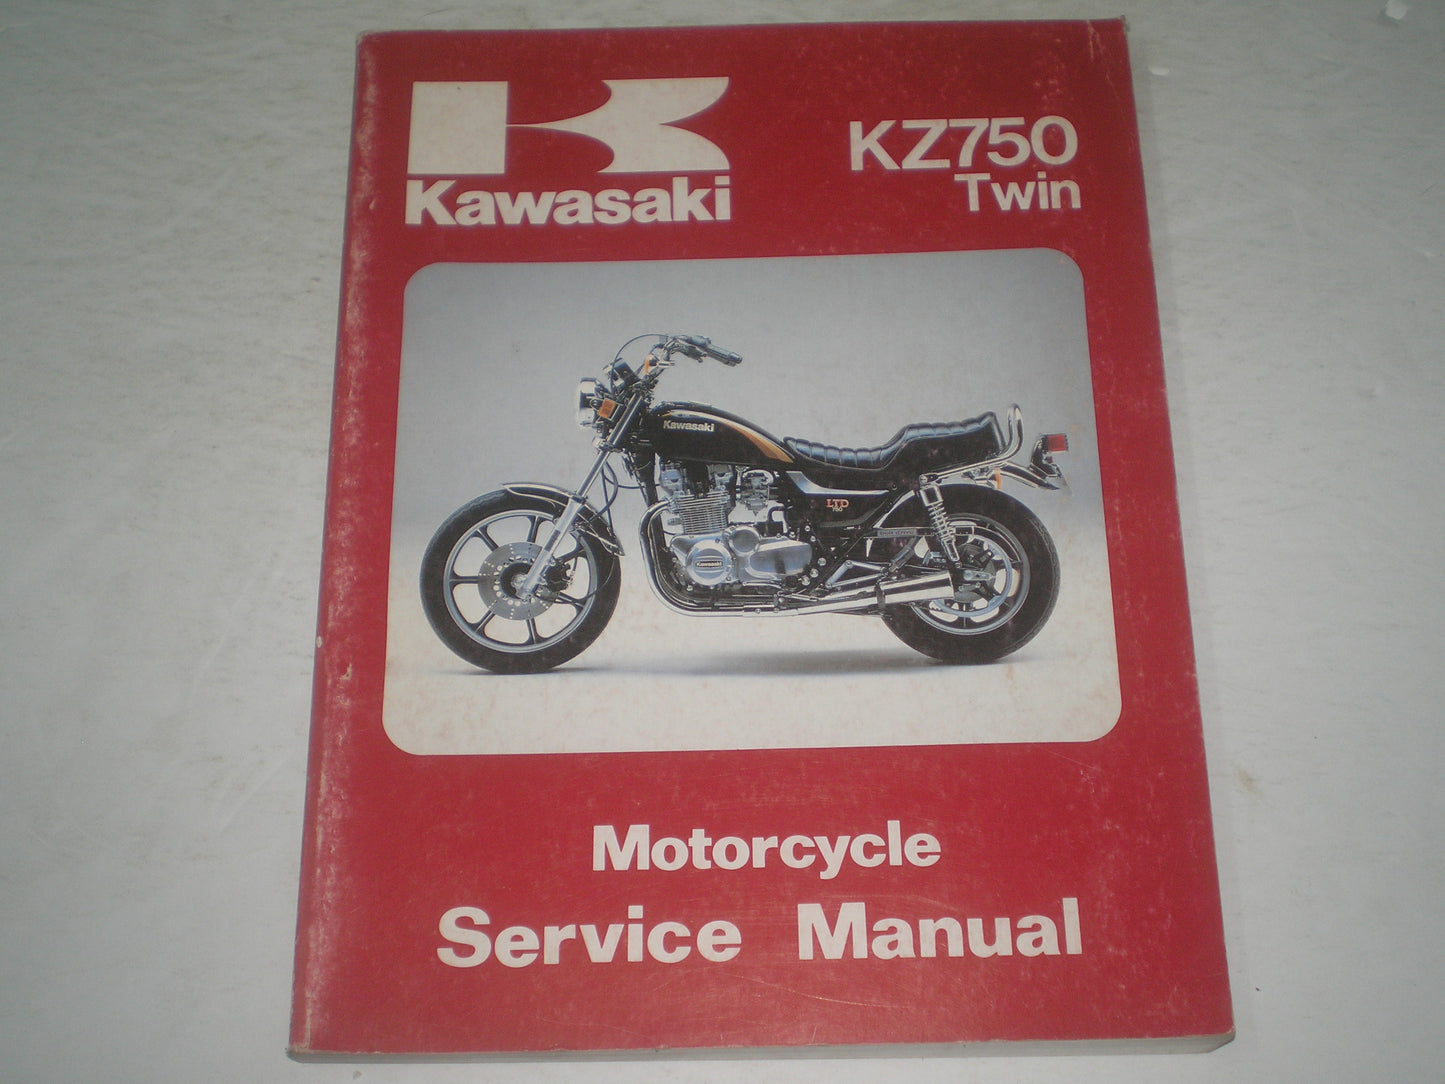 KAWASAKI KZ750  Z750  LTD  Twin 1979-1983  Service Manual  99924-1013-05  #1251